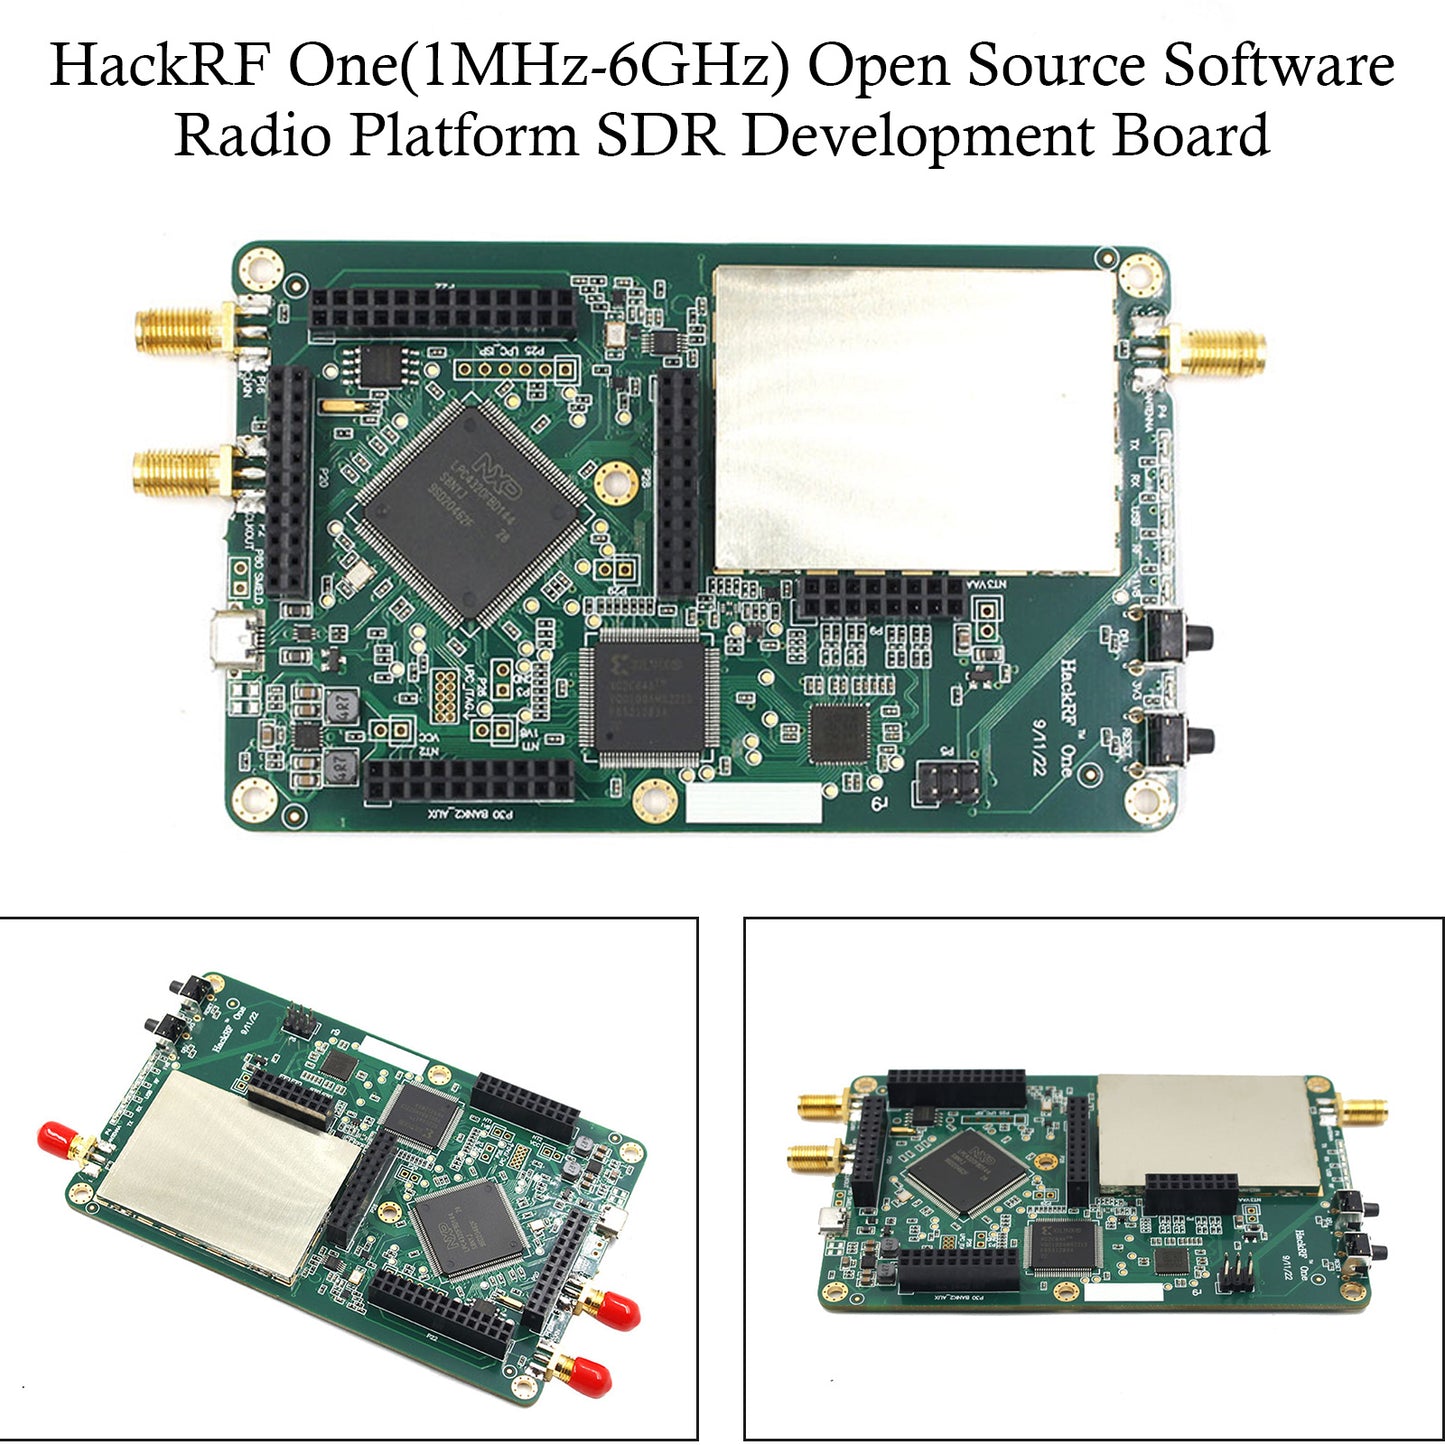 1MHz-6GHz HackRF One Open Source Software Radio Platform SDR Development Board